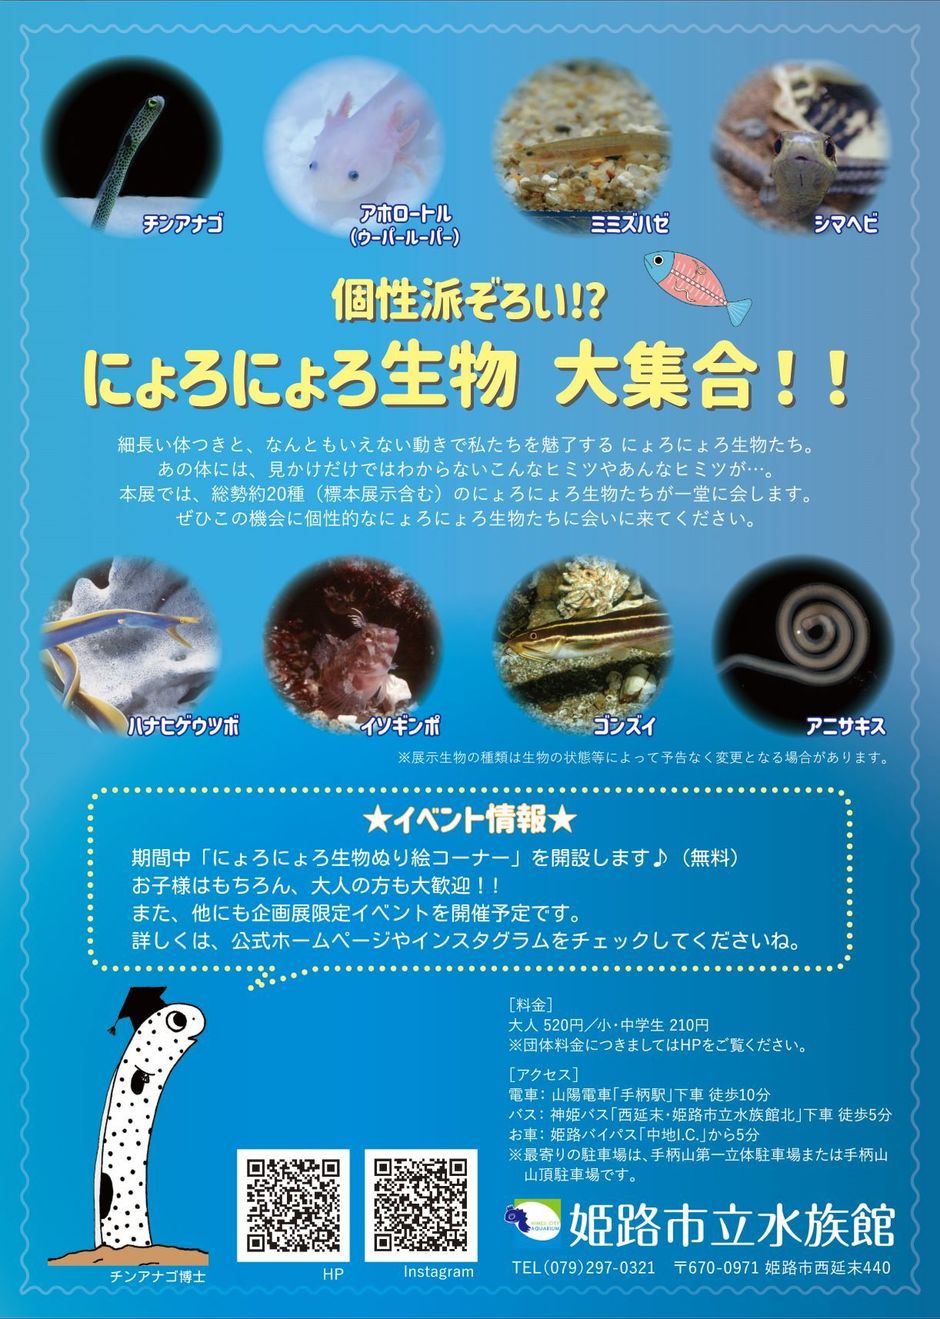 企画展「あつまれ にょろにょろたち」【姫路市立水族館】